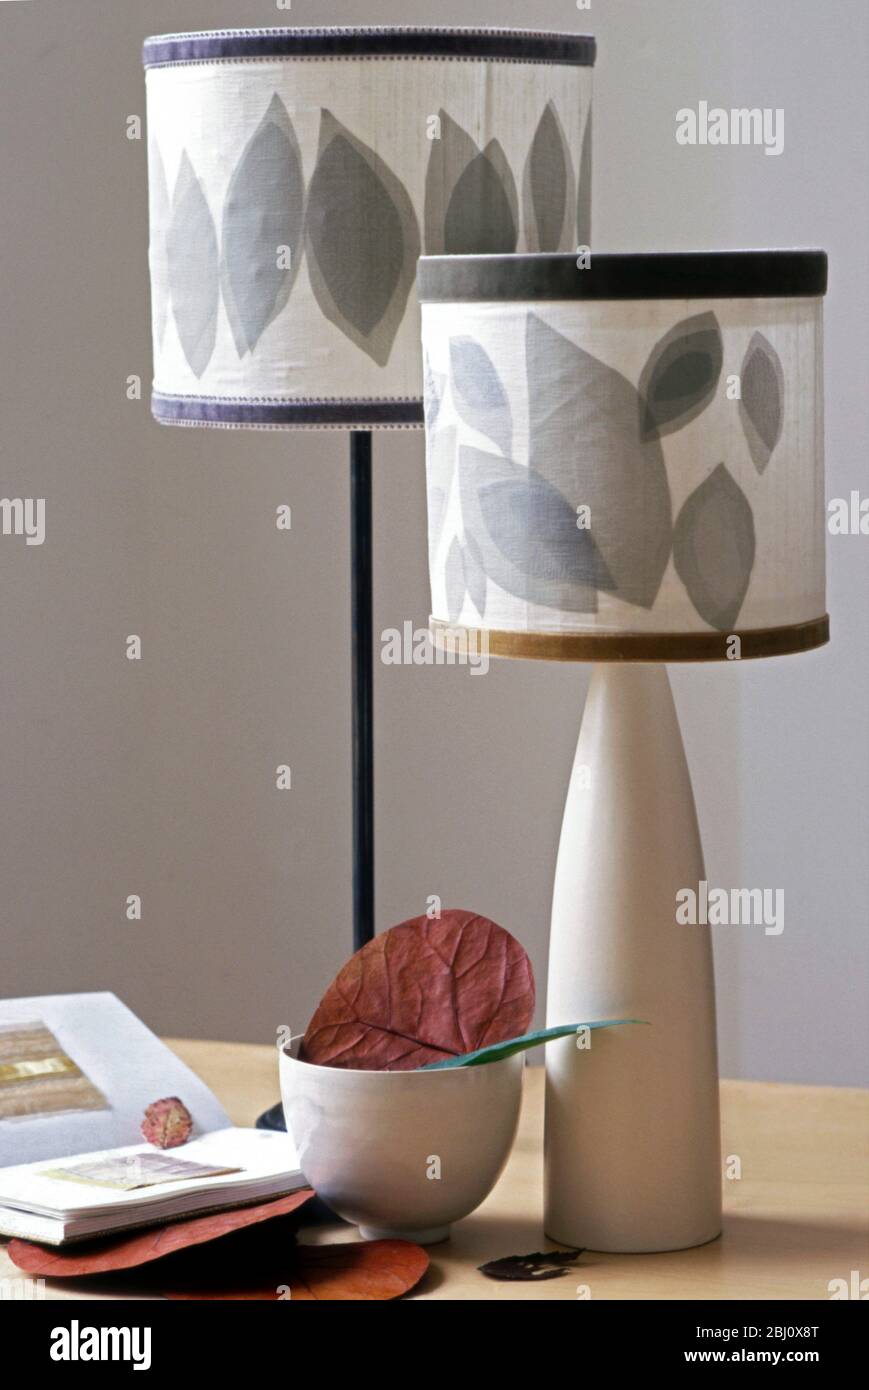 Lampes modernes avec des nuances en couches de différentes couleurs organza coupées en formes de feuilles dans le cadre intérieur - Banque D'Images